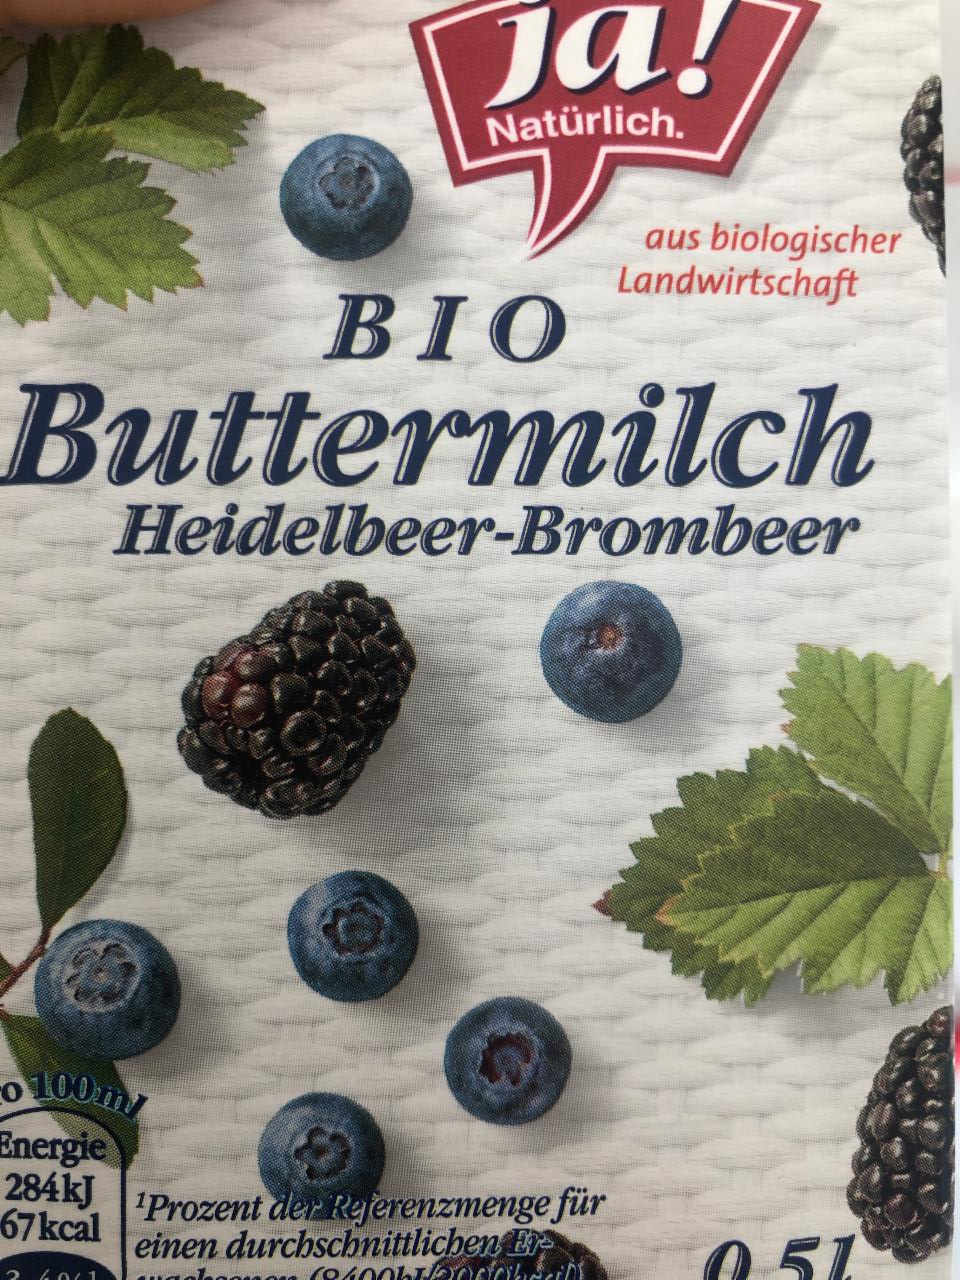 Fotografie - Bio Buttermilch Heidelbeere-Brombeer Ja! Natürlich.